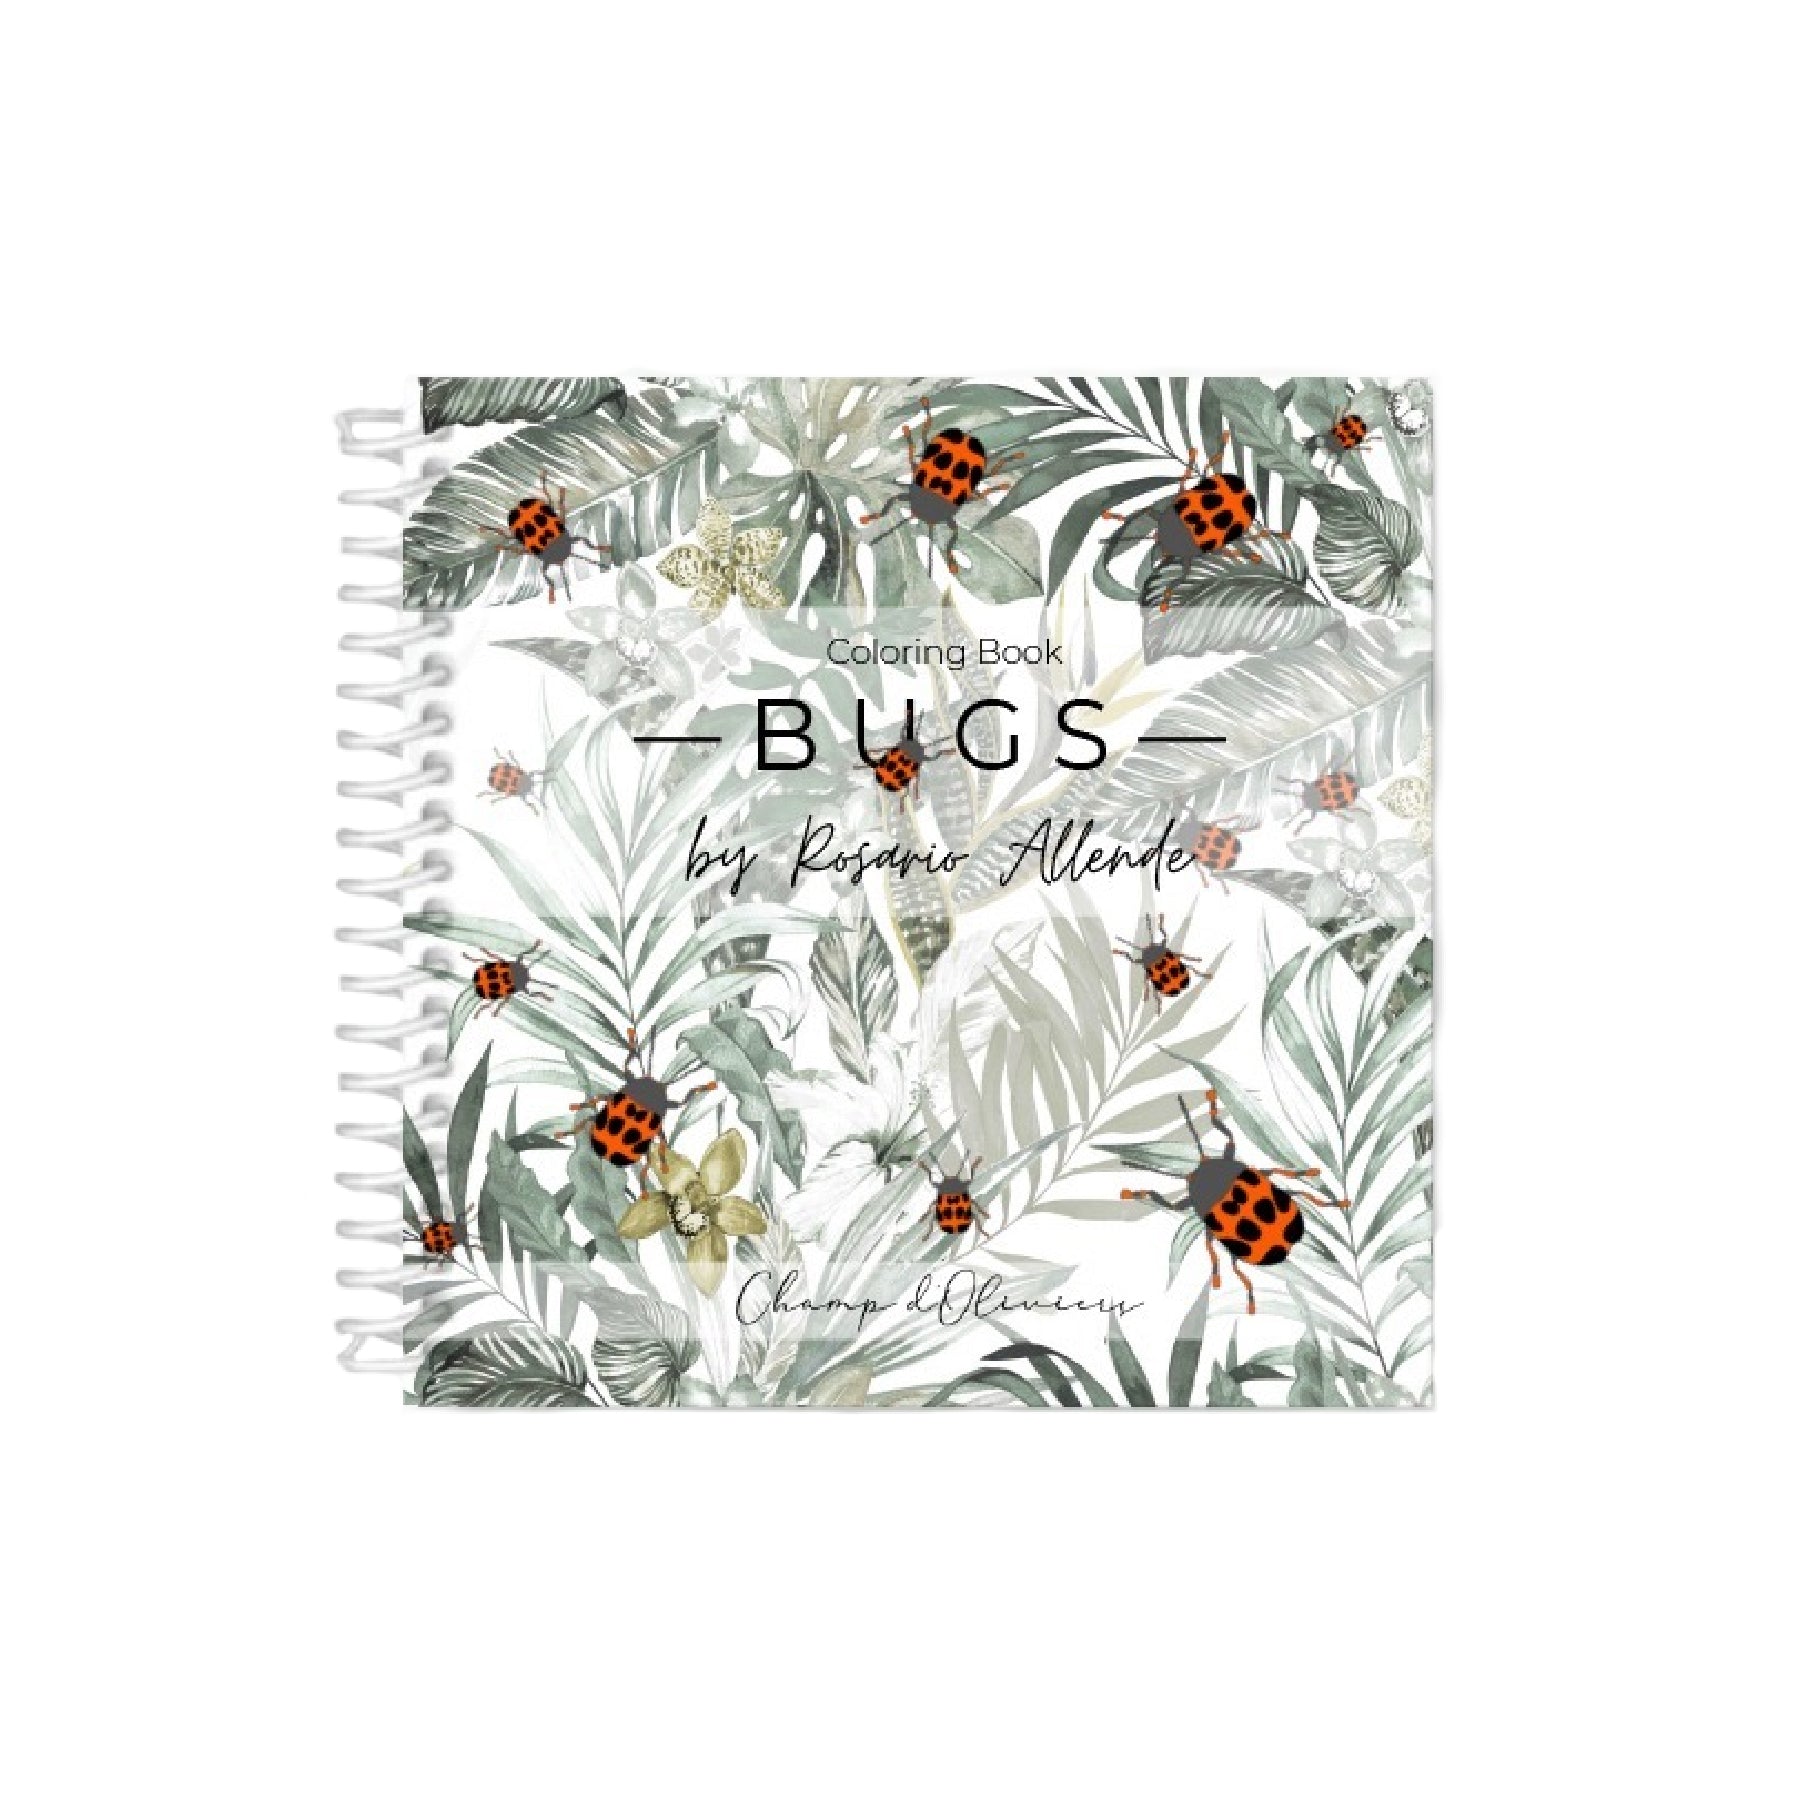 Bugs - libro para pintar